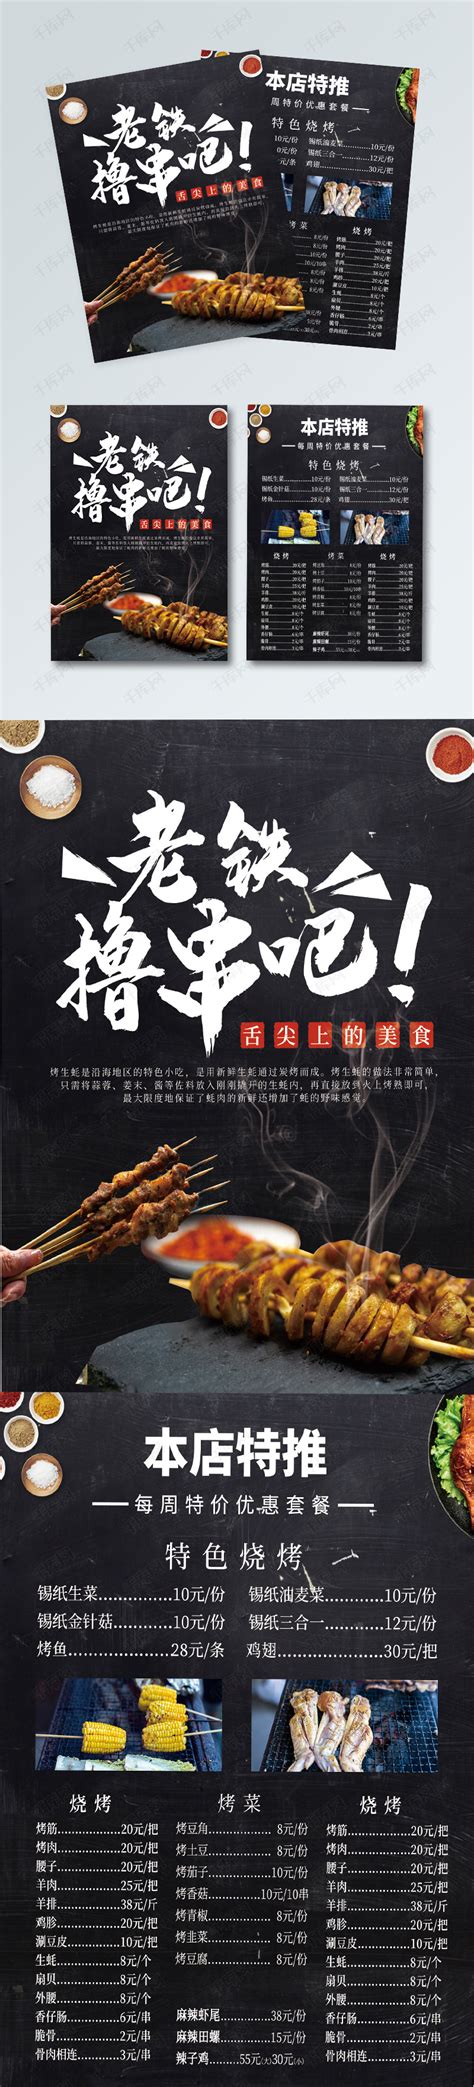 黑色大气烤肉烧烤餐饮菜单宣传单海报模板下载-千库网